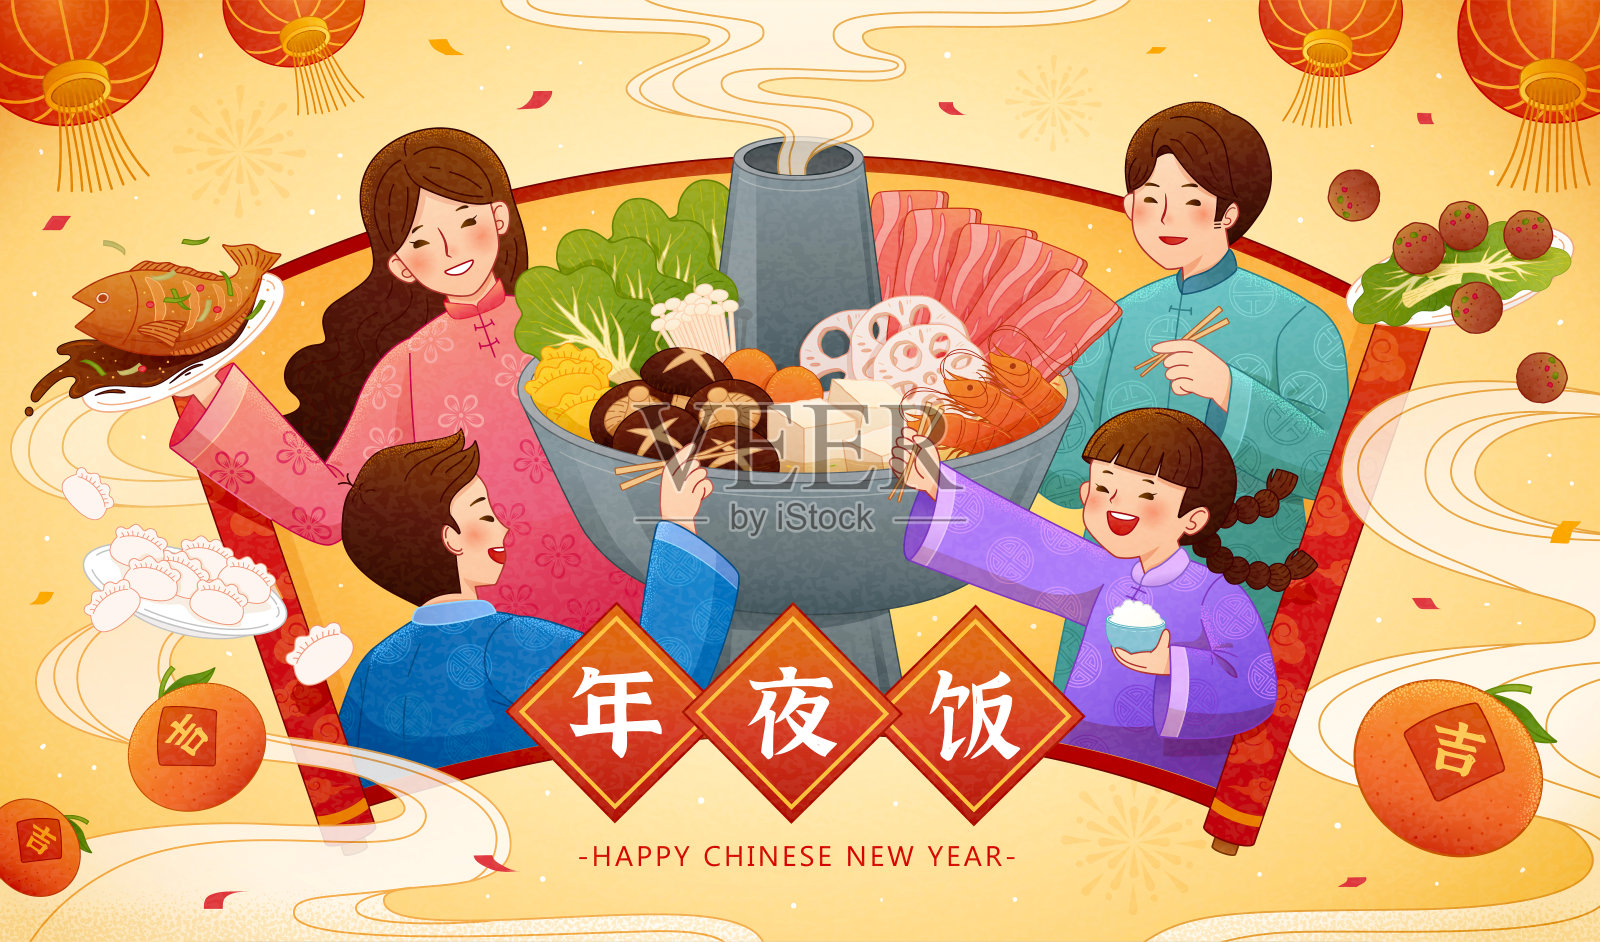 中国新年火锅团圆饭横幅设计模板素材